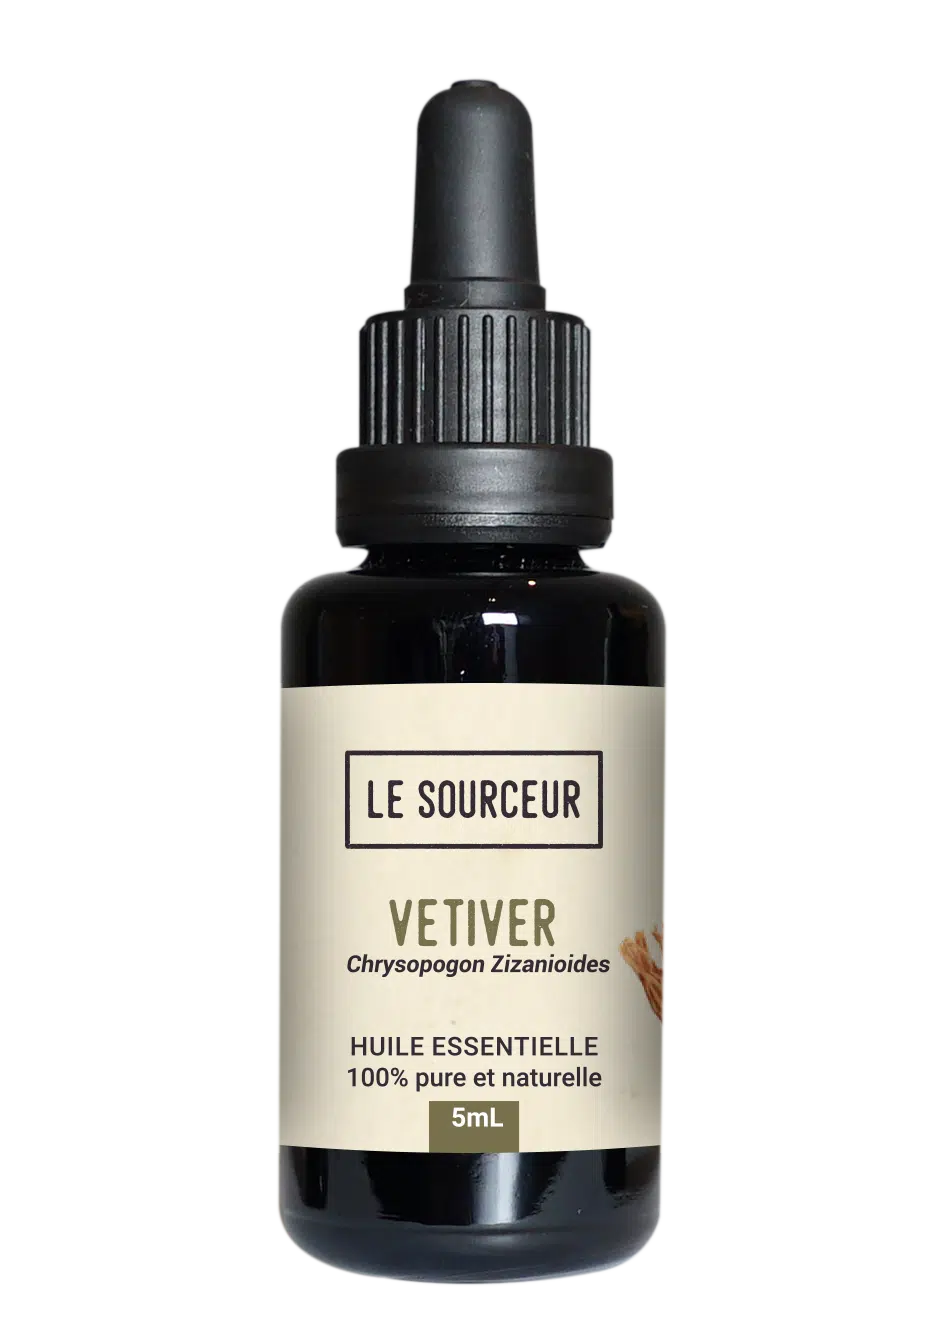 Bottle of Vetiver essential oil